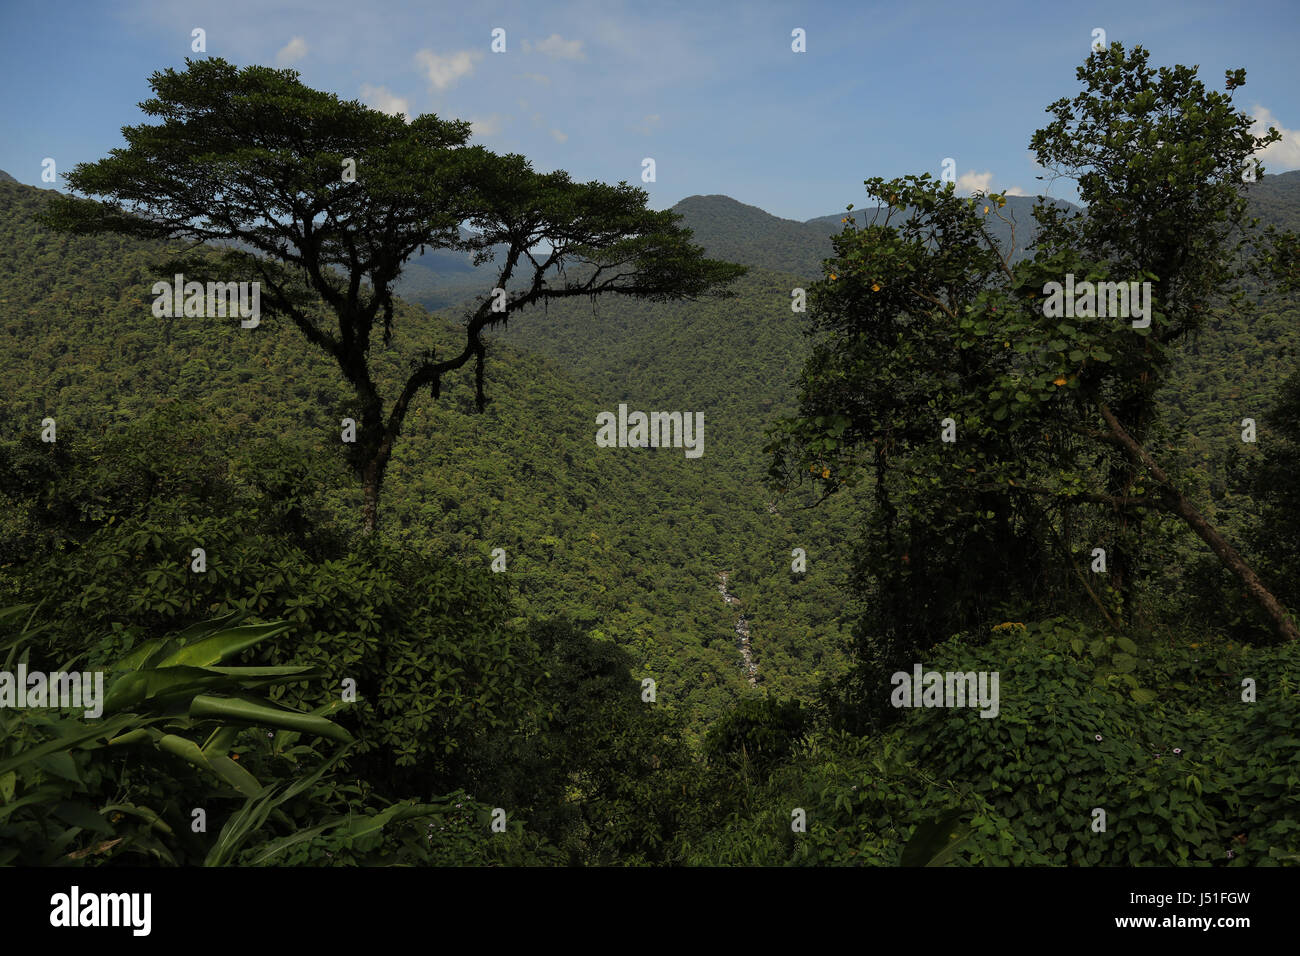 Tropical rain forest landscape, Costa Rica, Central America. Stock Photo